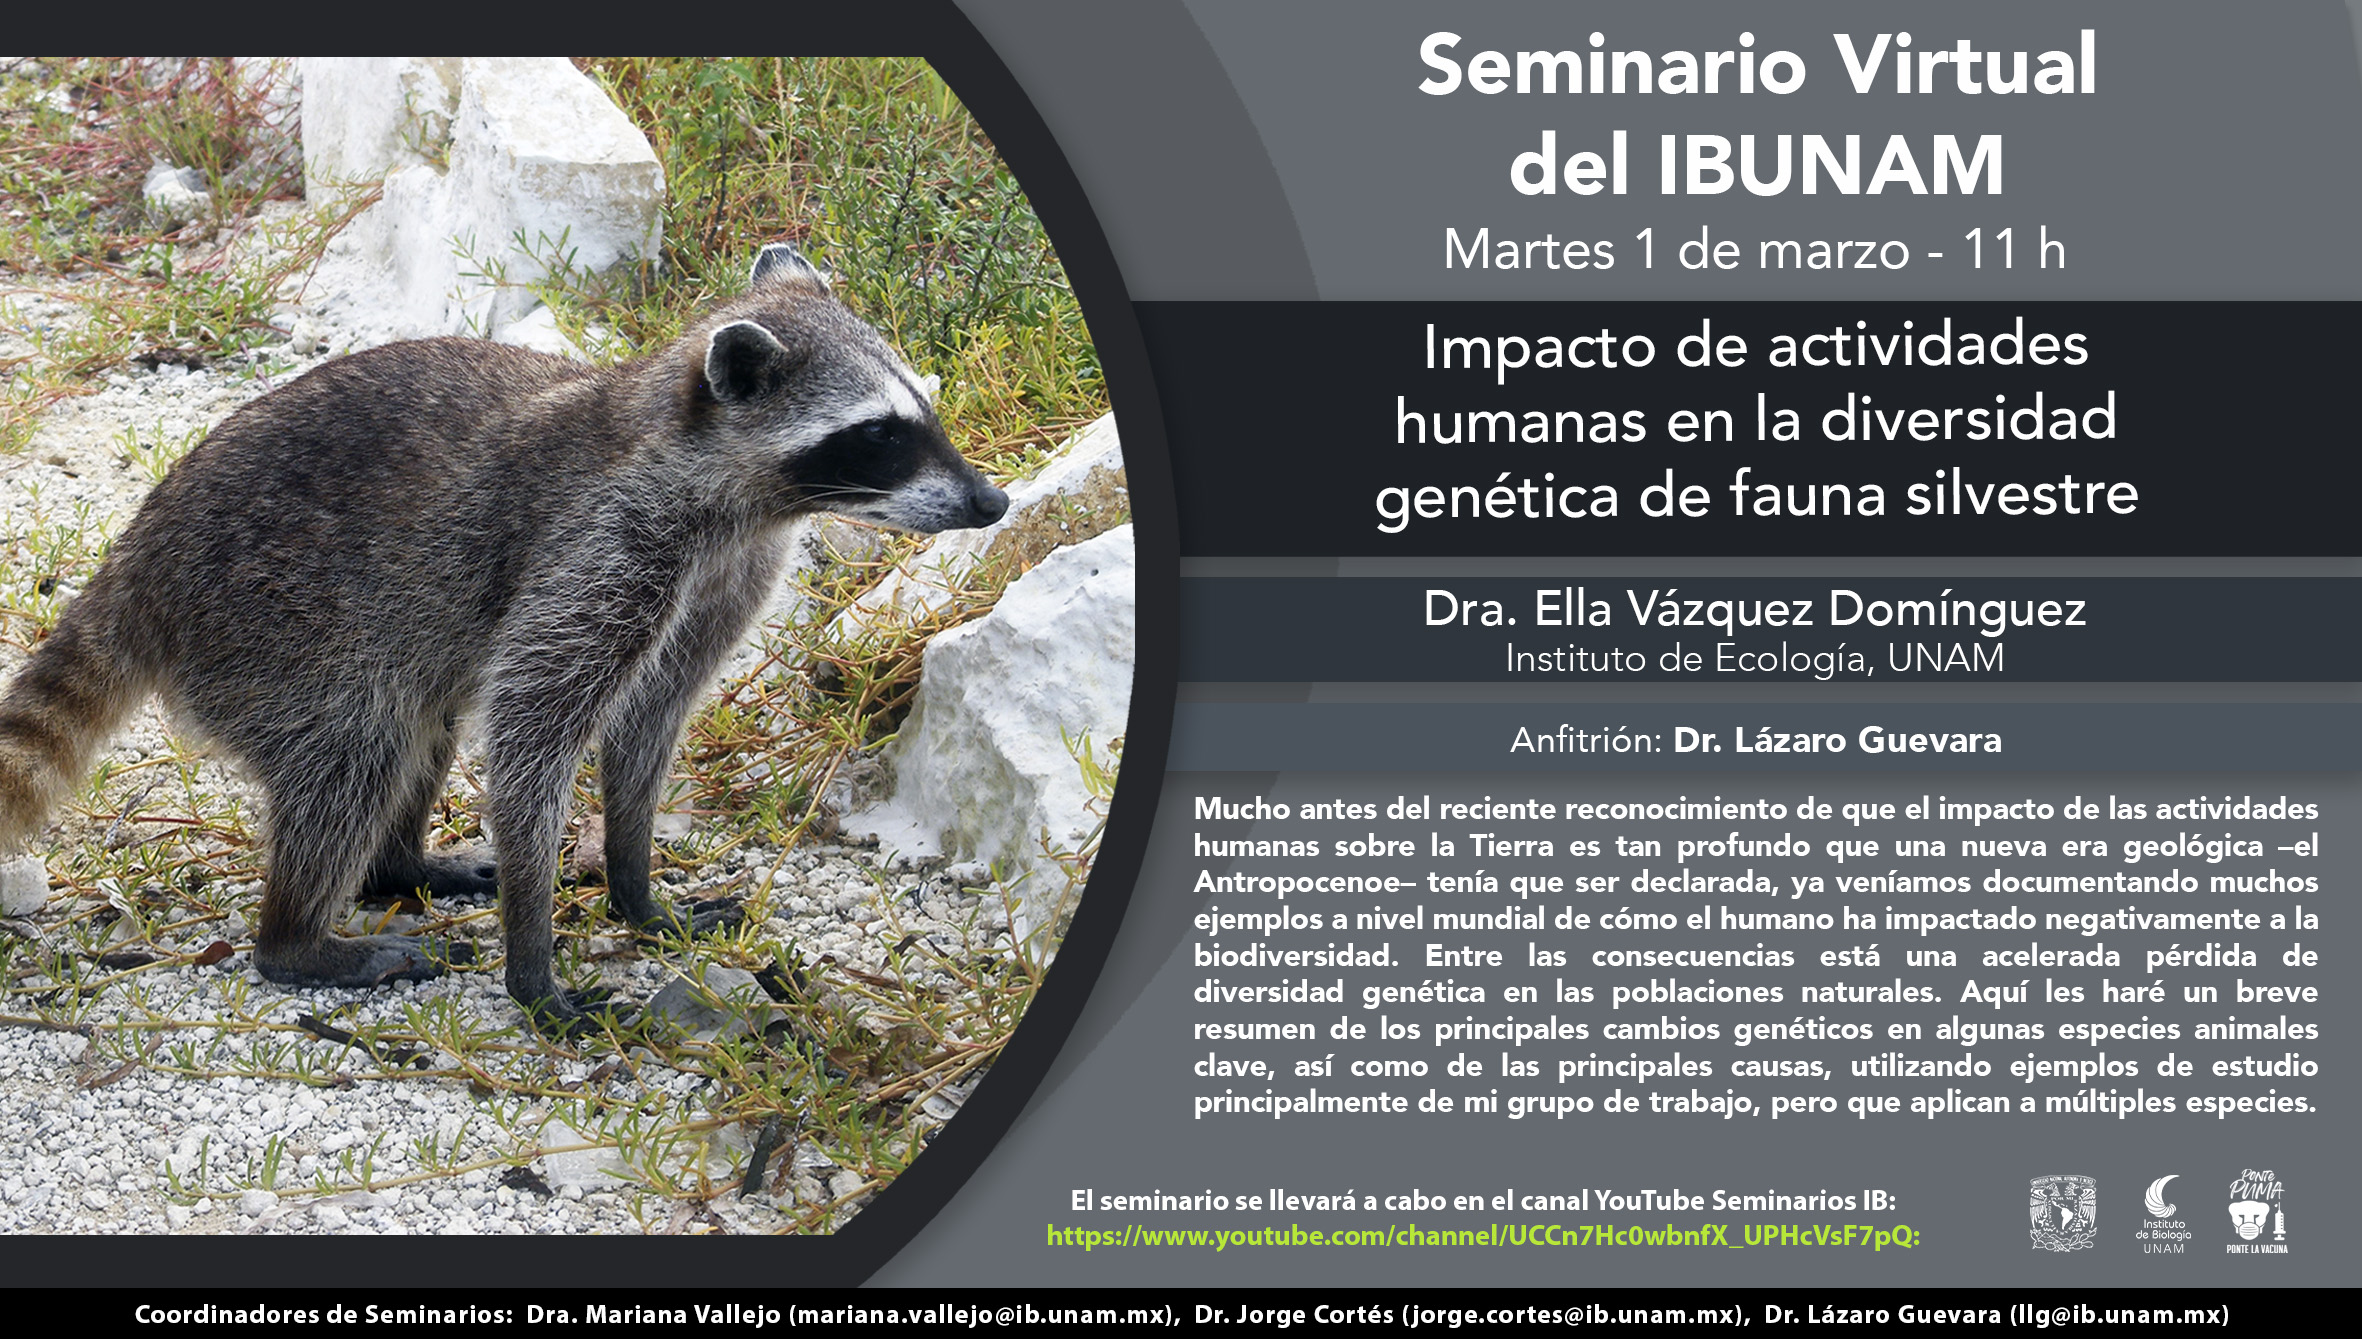 Impacto de actividades humanas en la diversidad genética de fauna silvestre - Instituto de Biología, UNAM